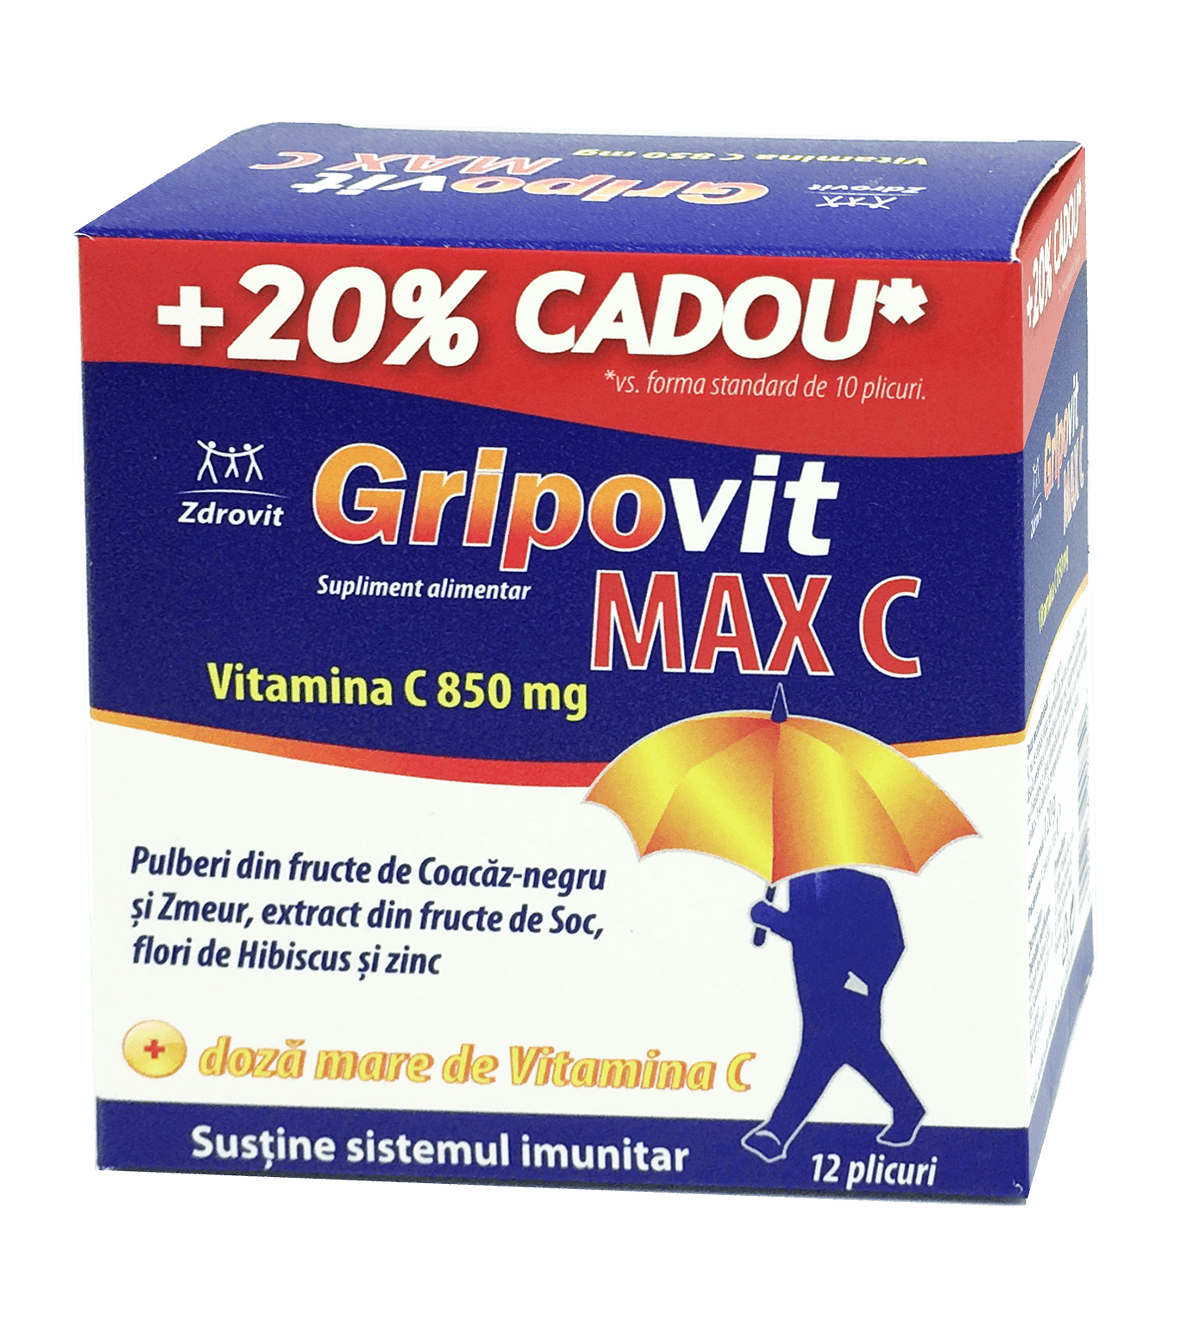 ZDROVIT GRIPOVIT MAX C 10PLICURI + 2PLICURI GRATIS 20%CADOU